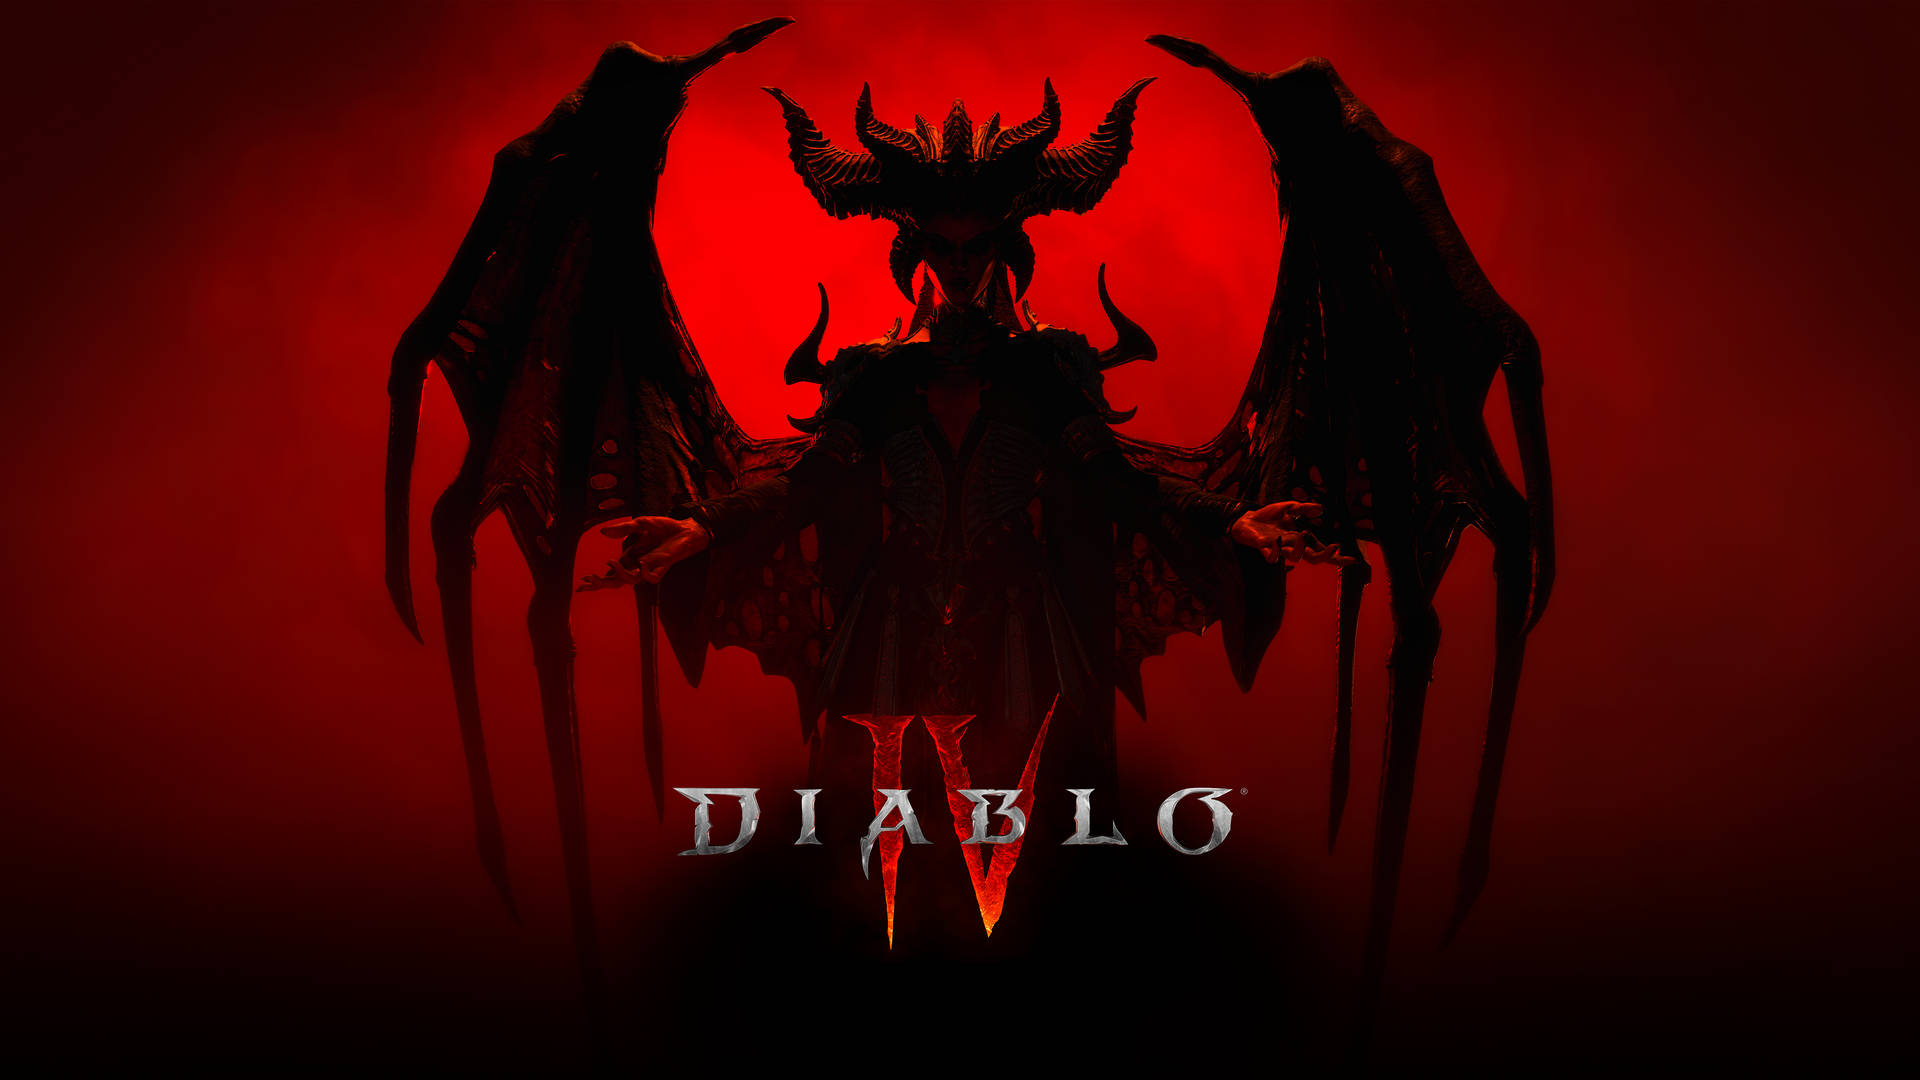 Evil Diablo IV Picture Wallpaper